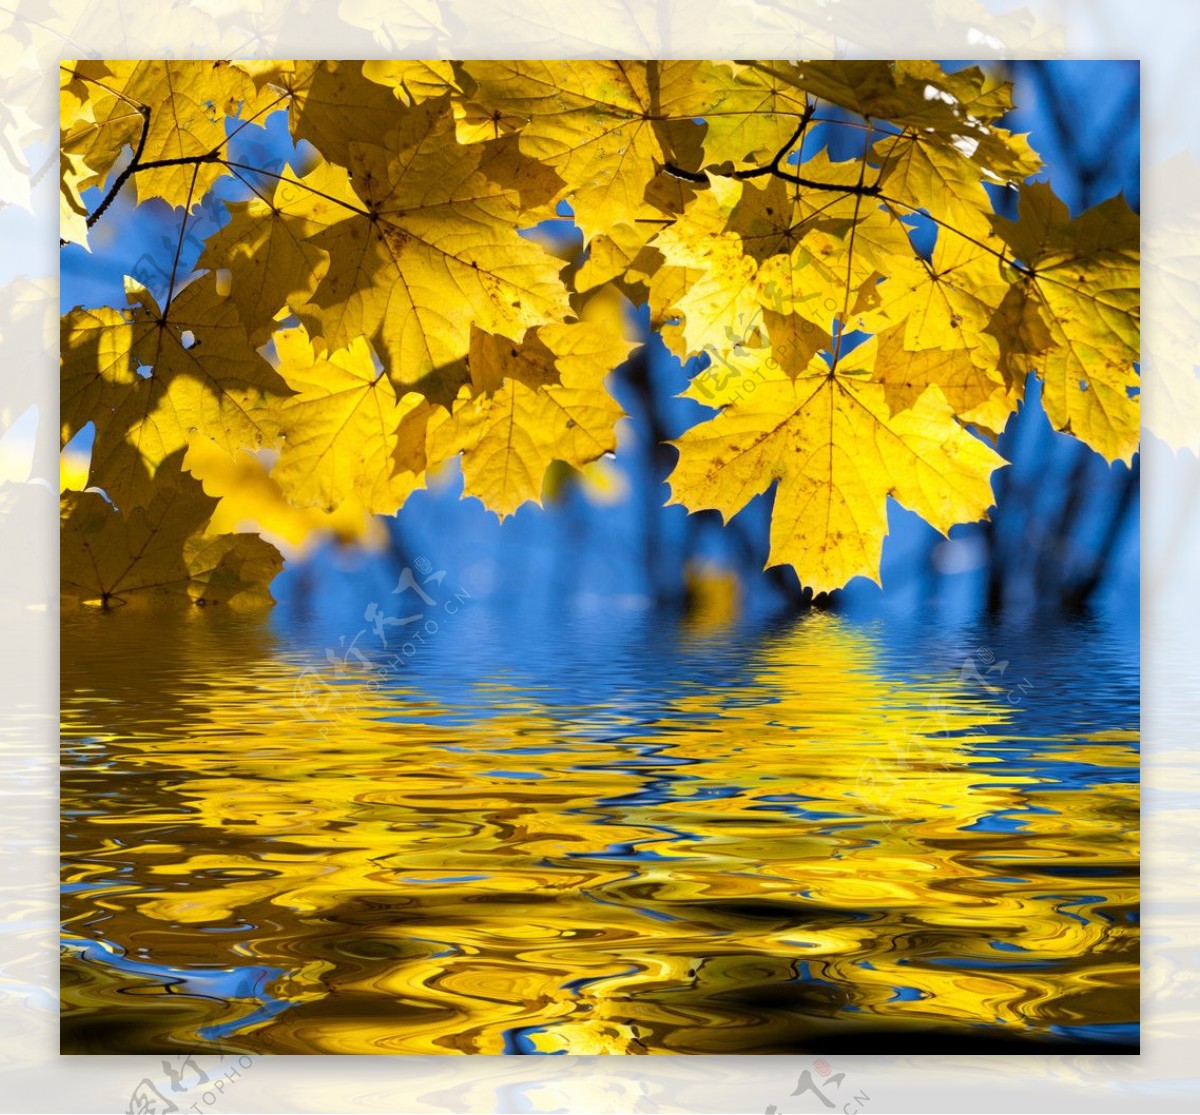 秋天唯美枫叶风景意境图片壁纸-壁纸图片大全